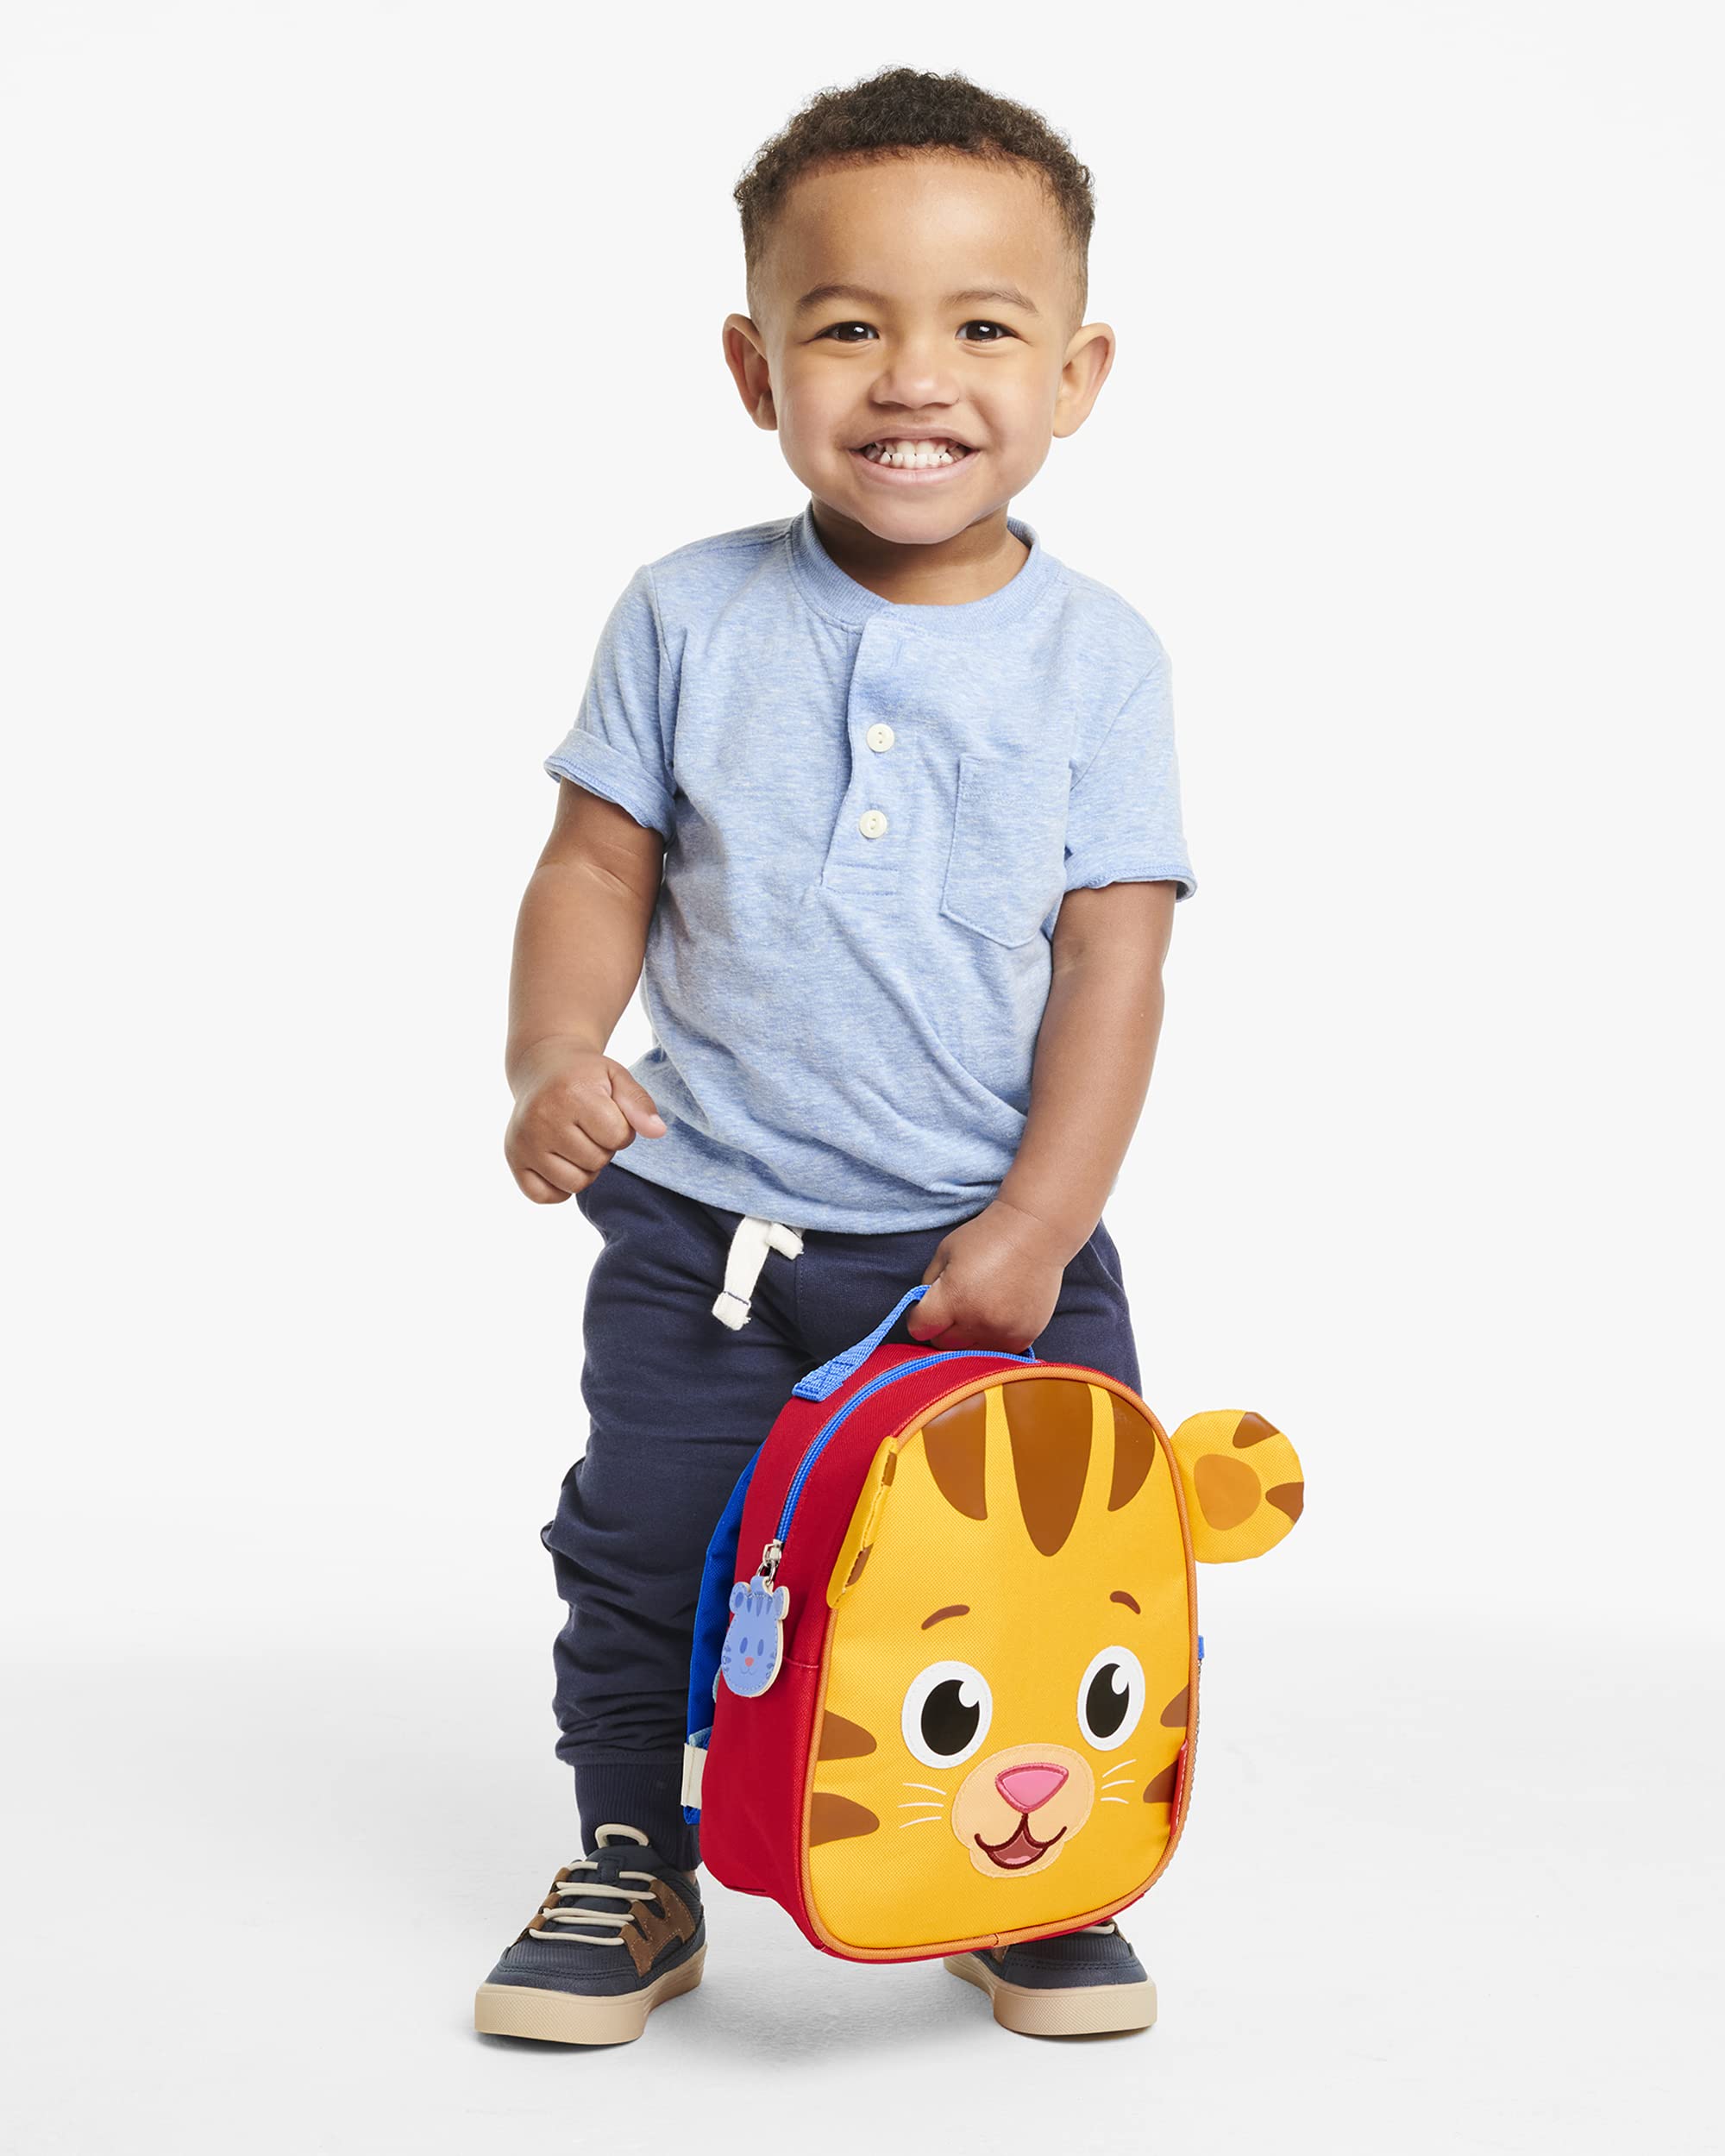 Skip Hop x Daniel Tiger Mini Toddler Backpack, Preschool Ages 1-4, Daniel Tiger